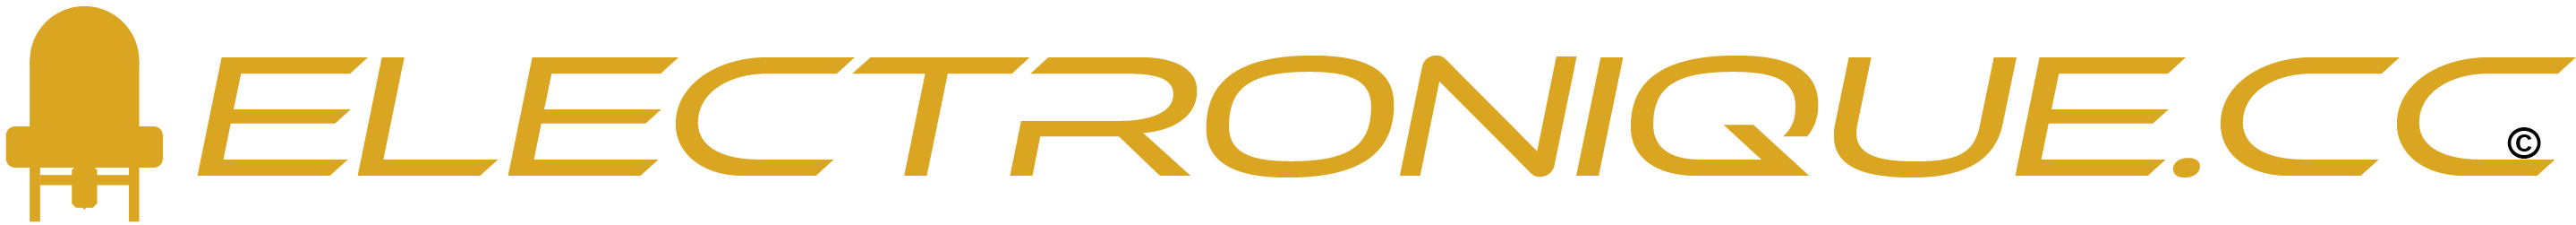 Logo de electronique.cc